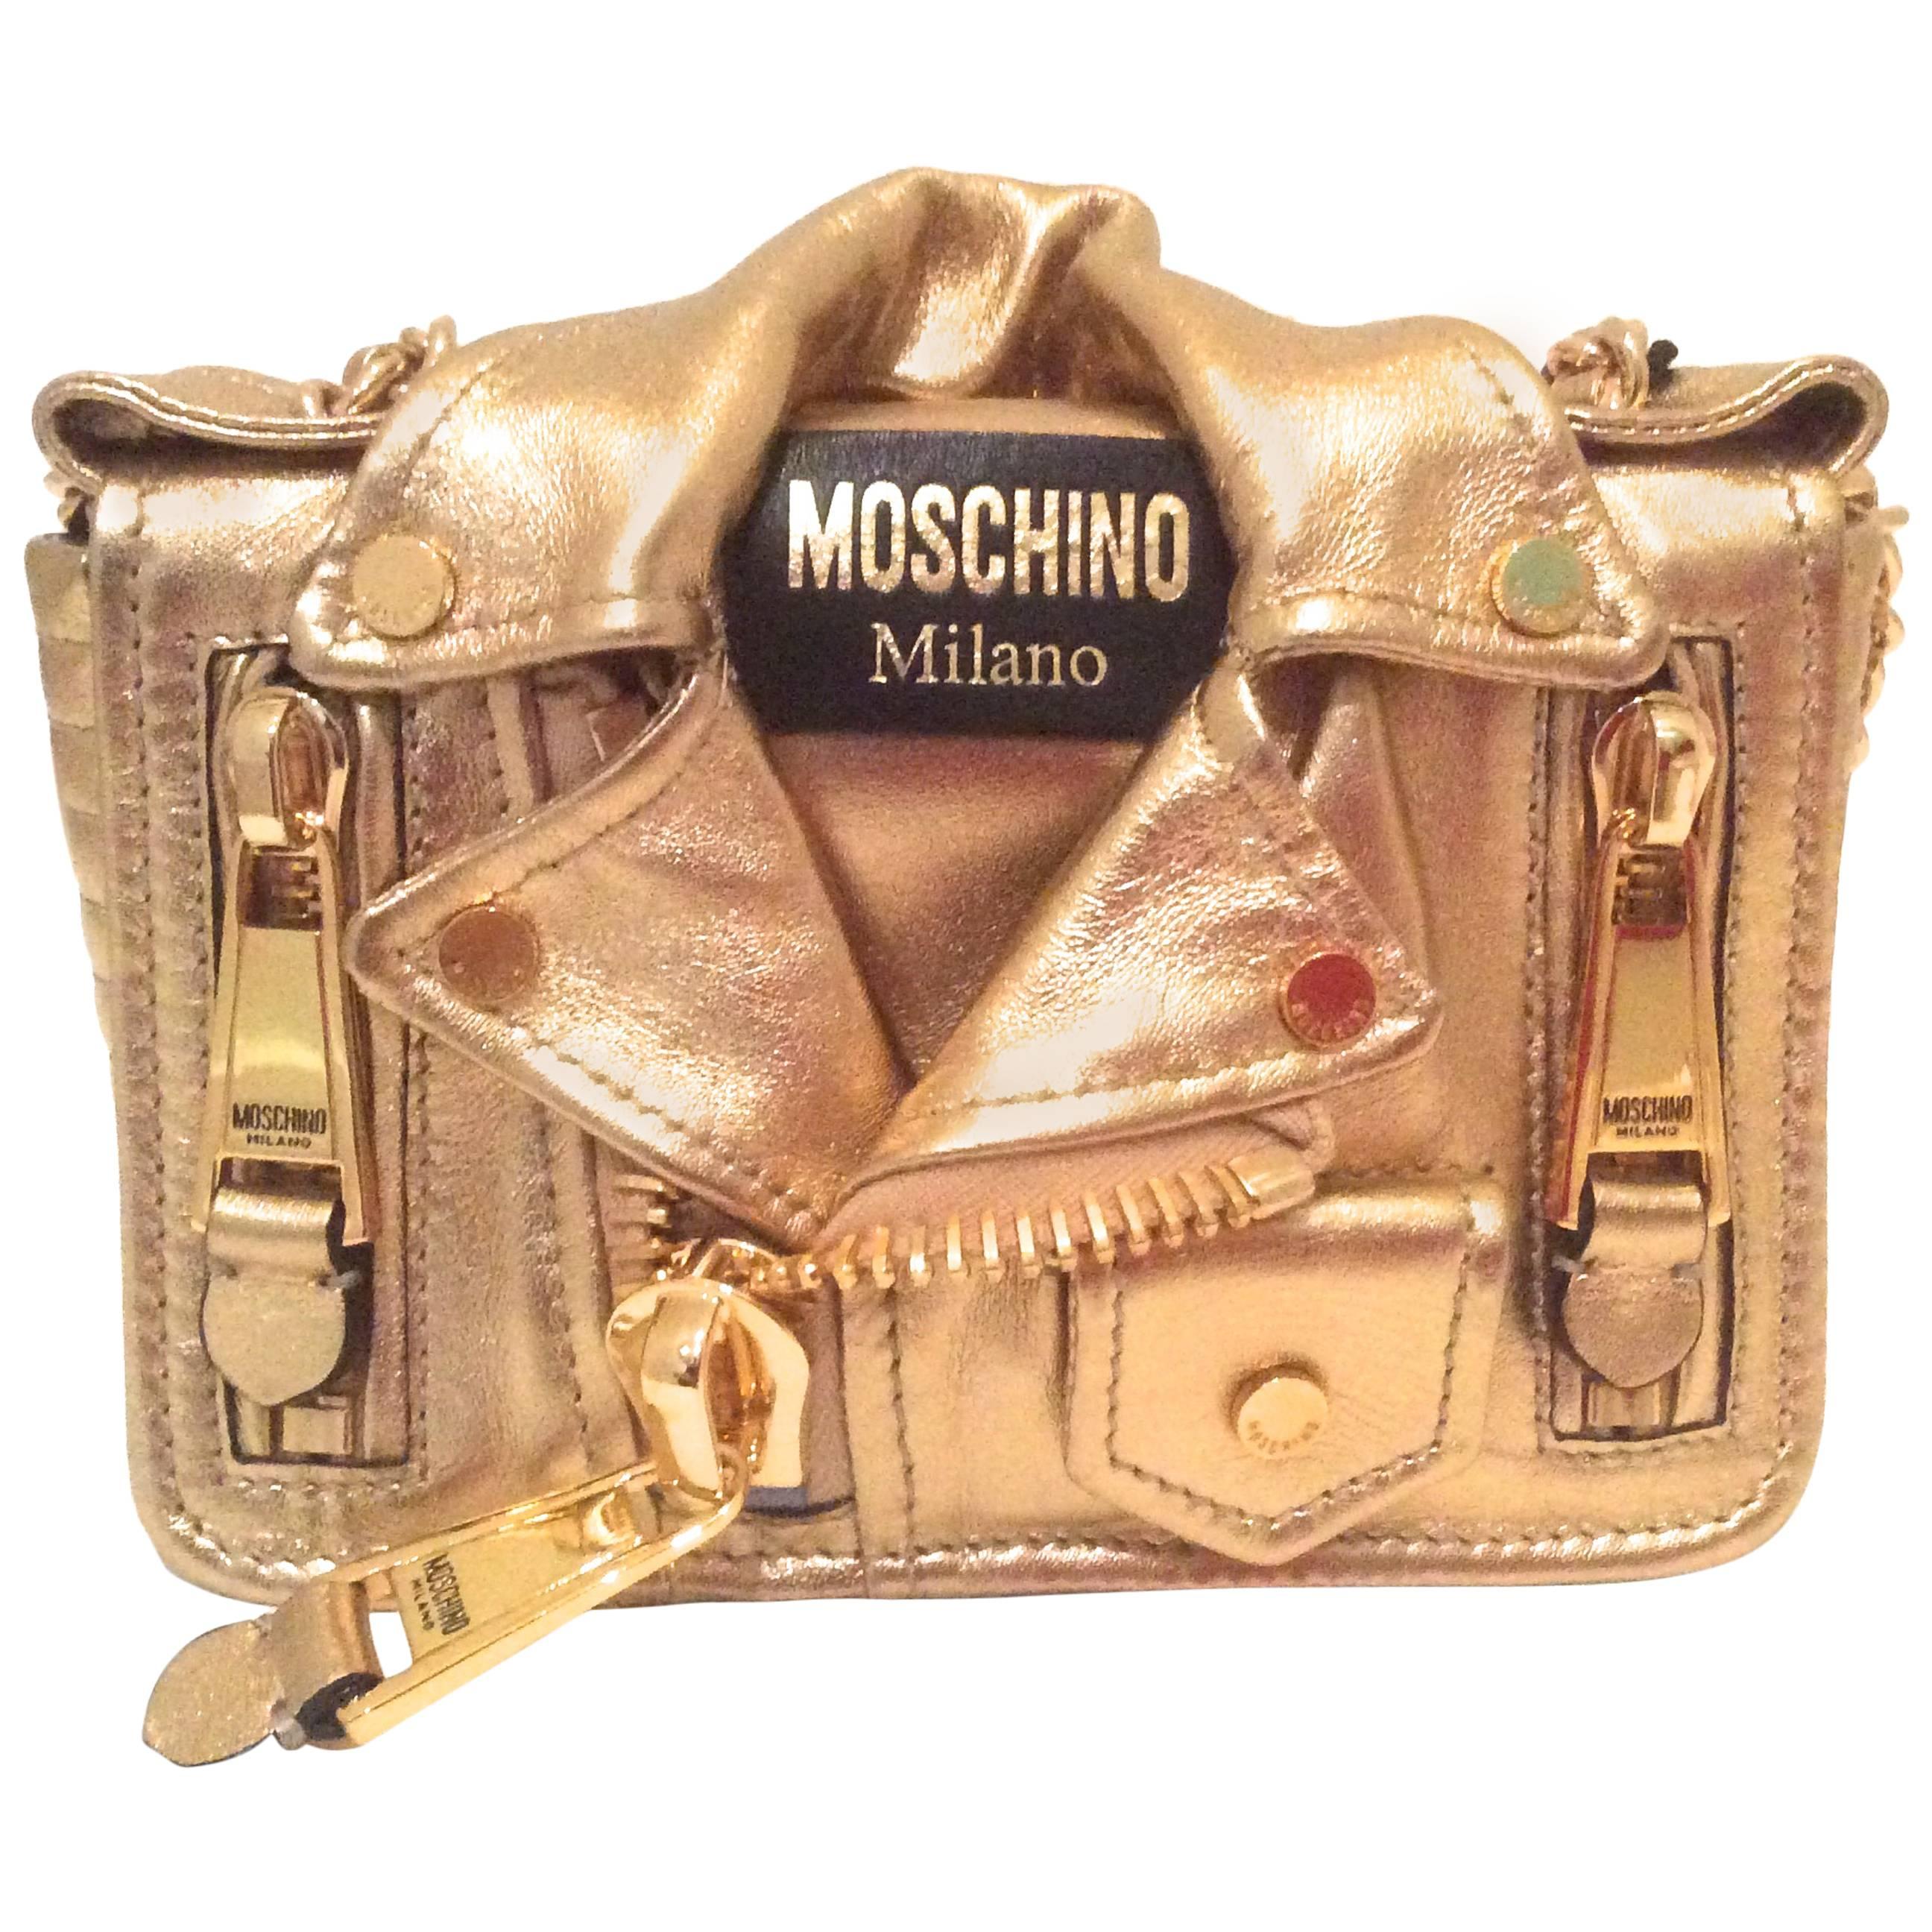 Moschino Gold Biker Jacket Handbag - Rare